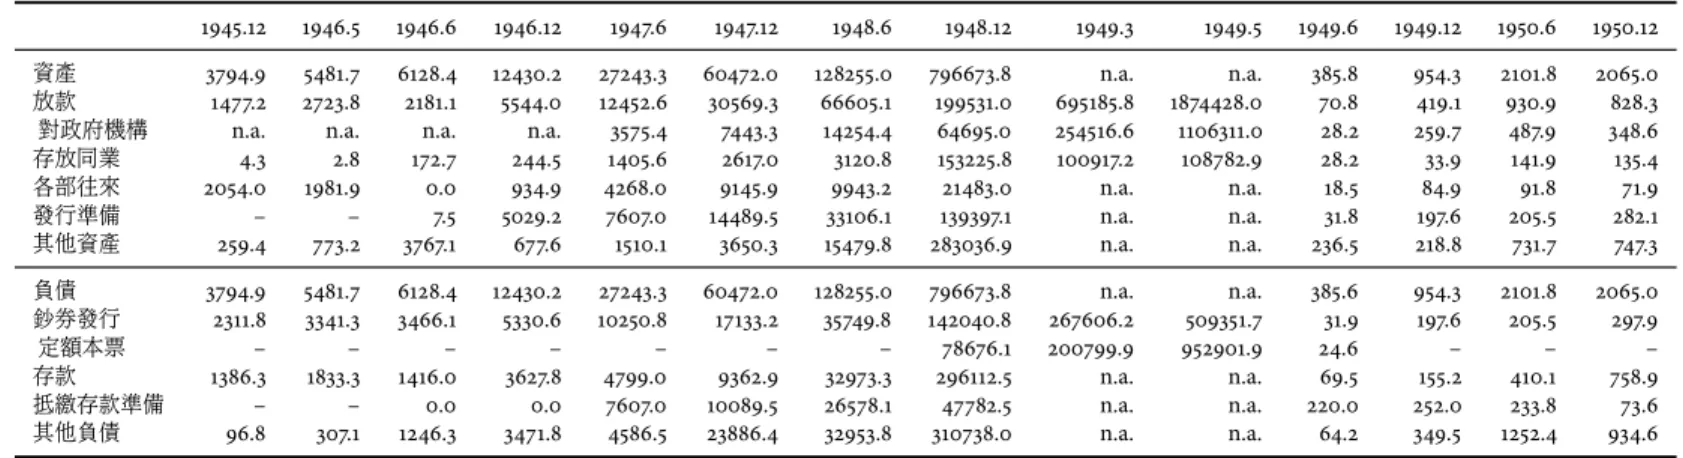 表 3: 台灣銀行資產負債表 : 1945.12–1950.12